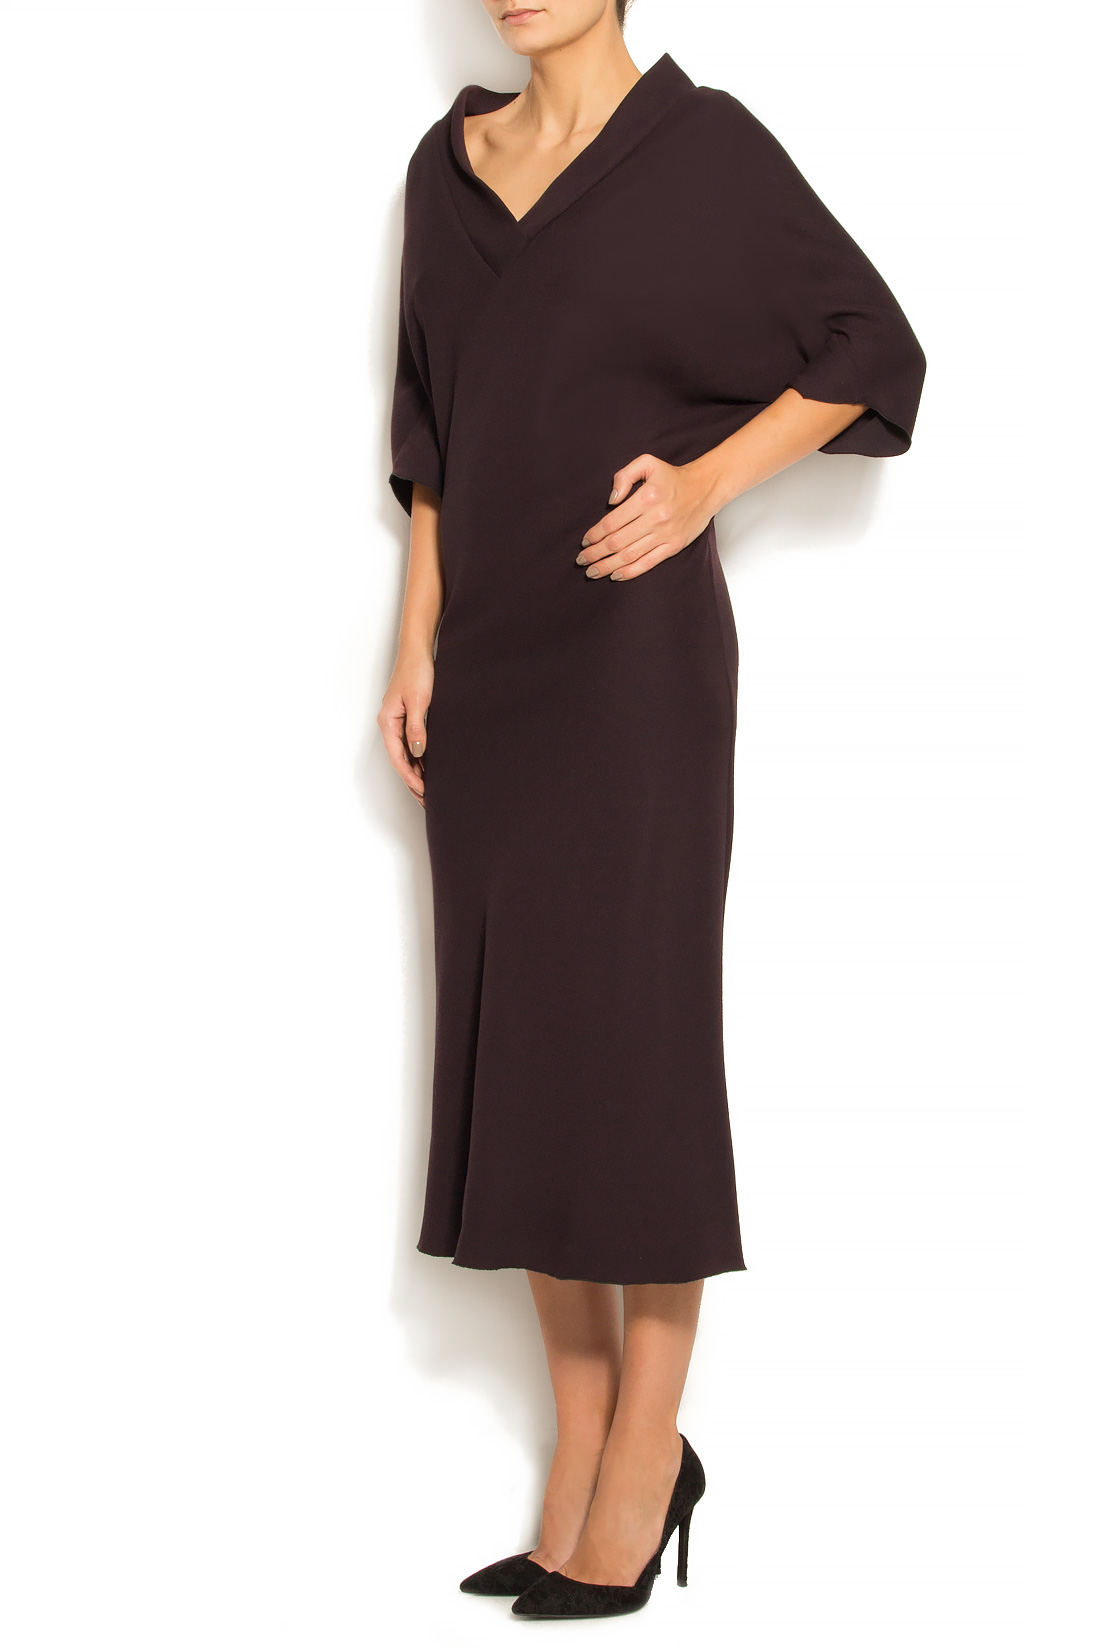 فستان من مزيج القطن و الصوف لينا كريفانو image 1